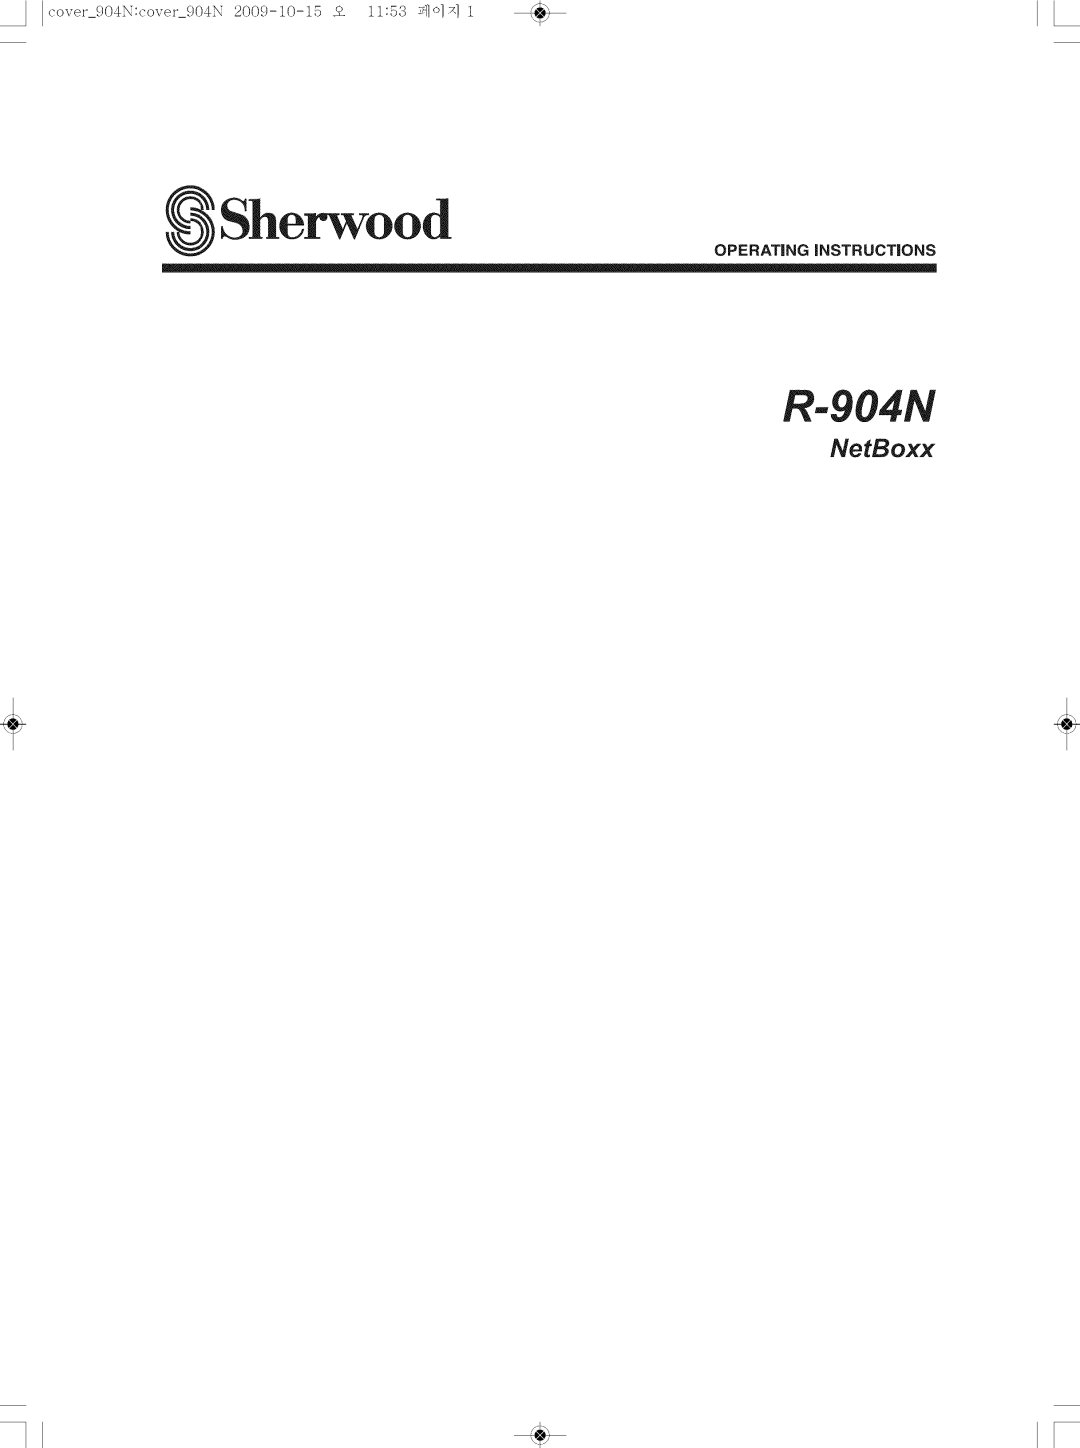 Sherwood quick start Quick Start Guide R-904NNetBoxx, VuNow AV STREAMING FUNCTION 